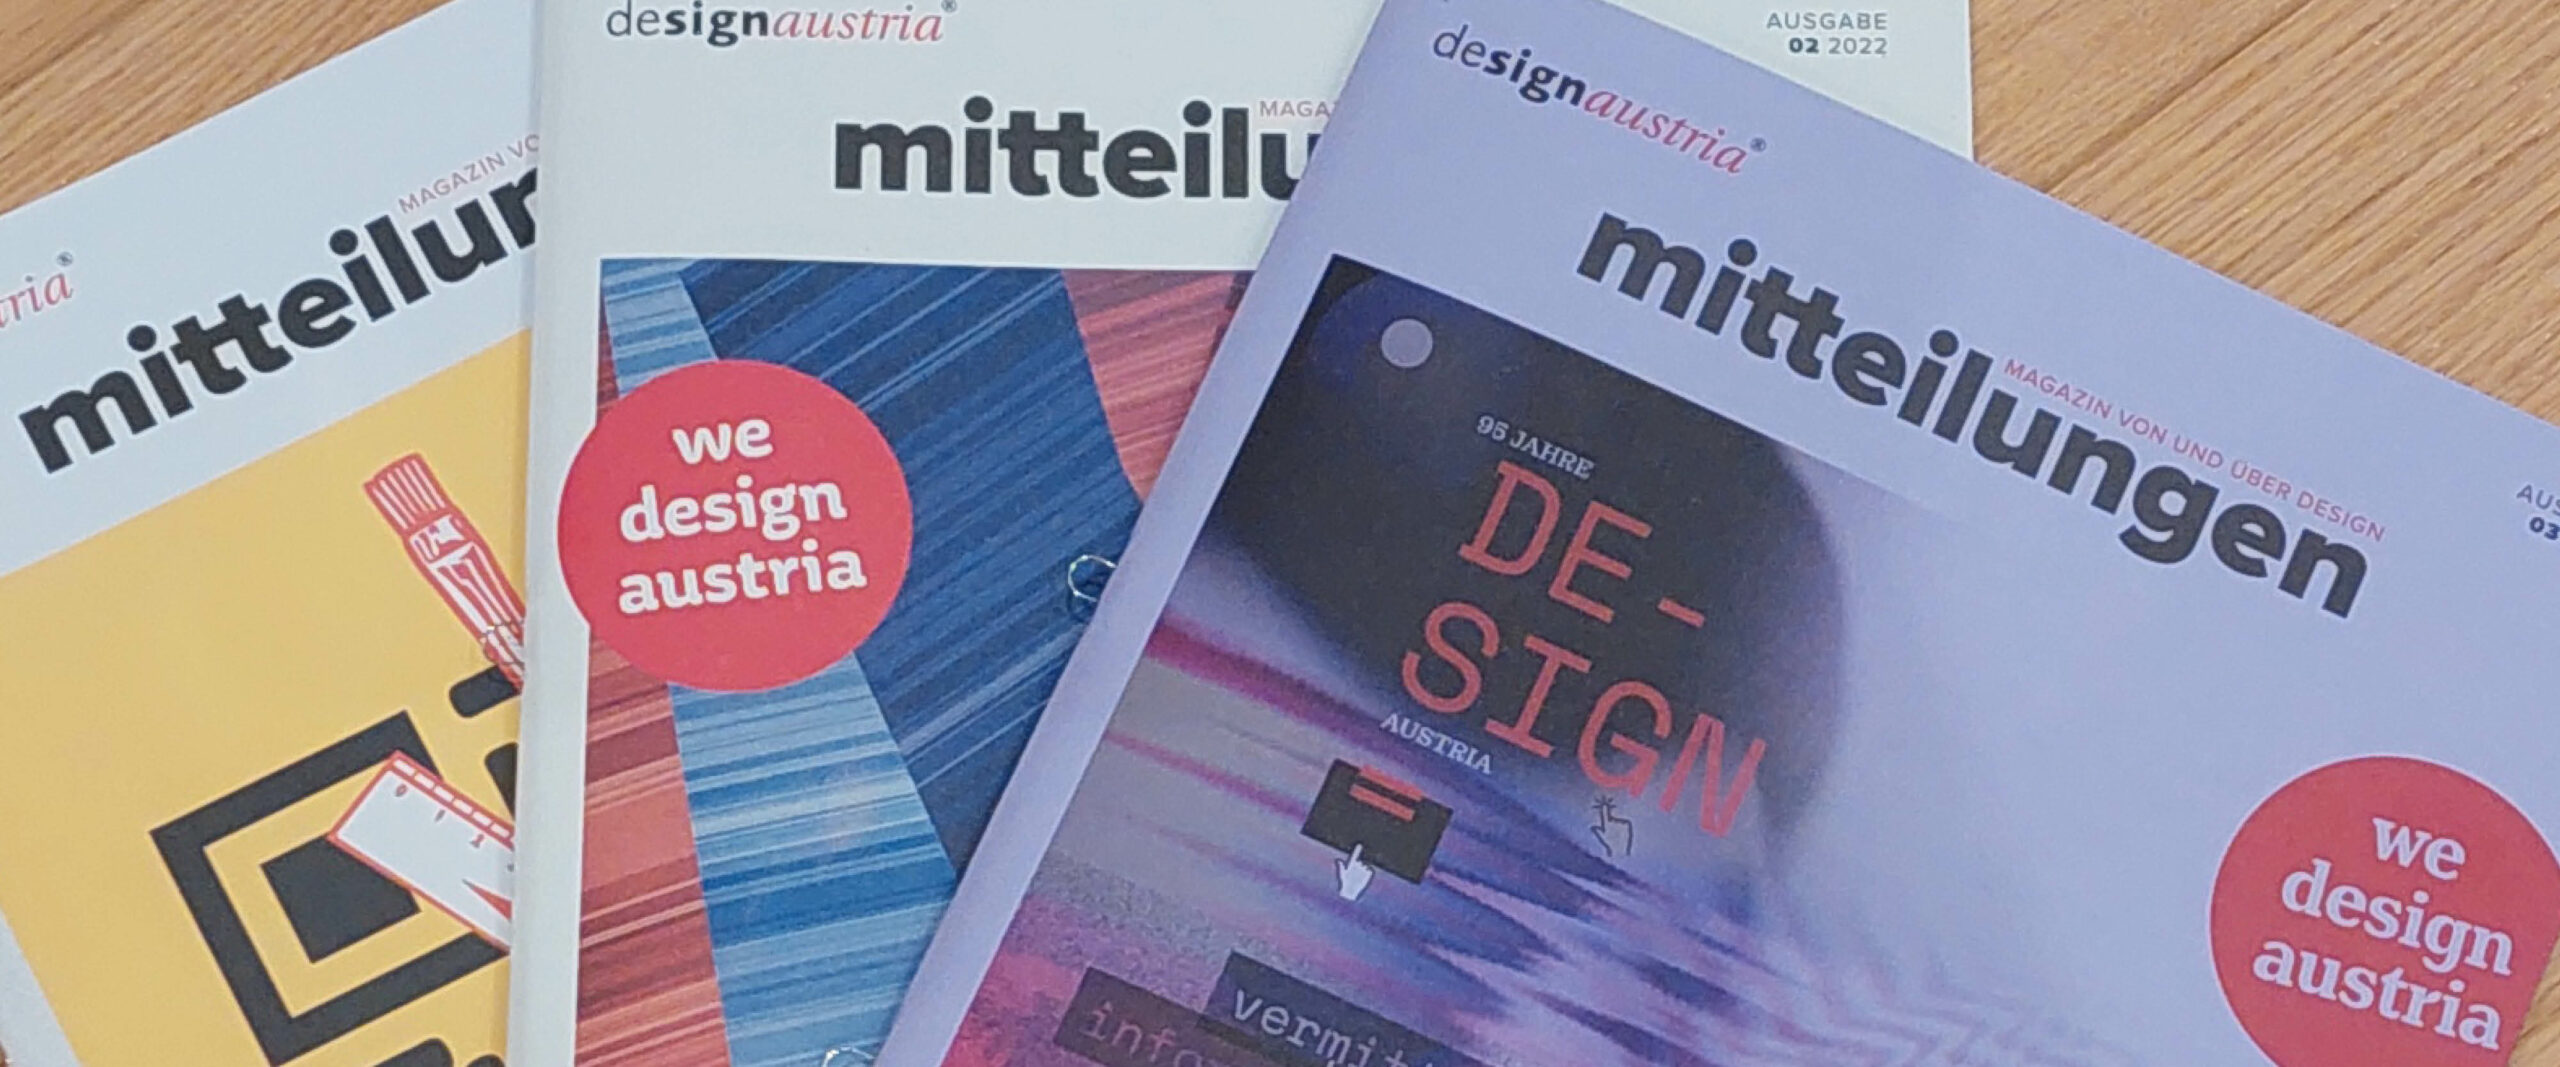 Design Austria Mitteilungen - cardamom